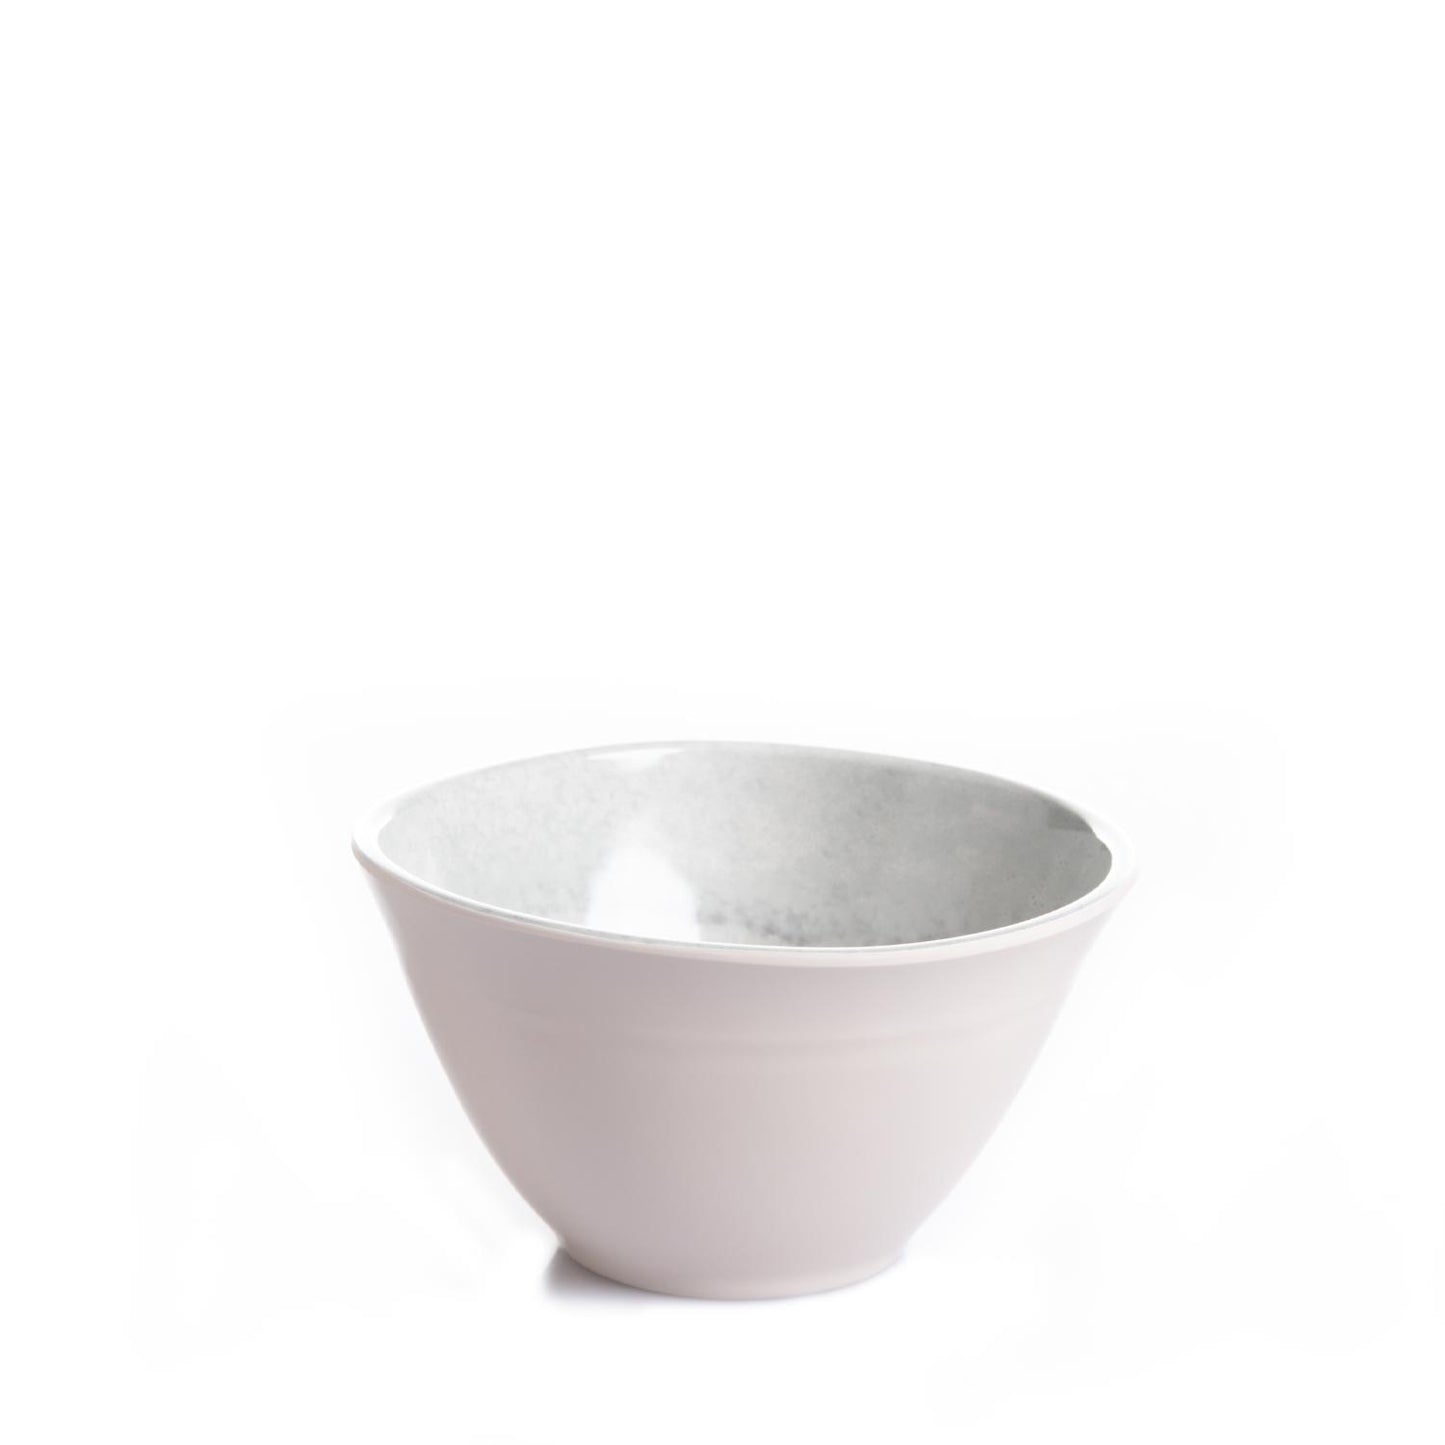 Bowl em Orgânico Ágata Cinza 15 cm